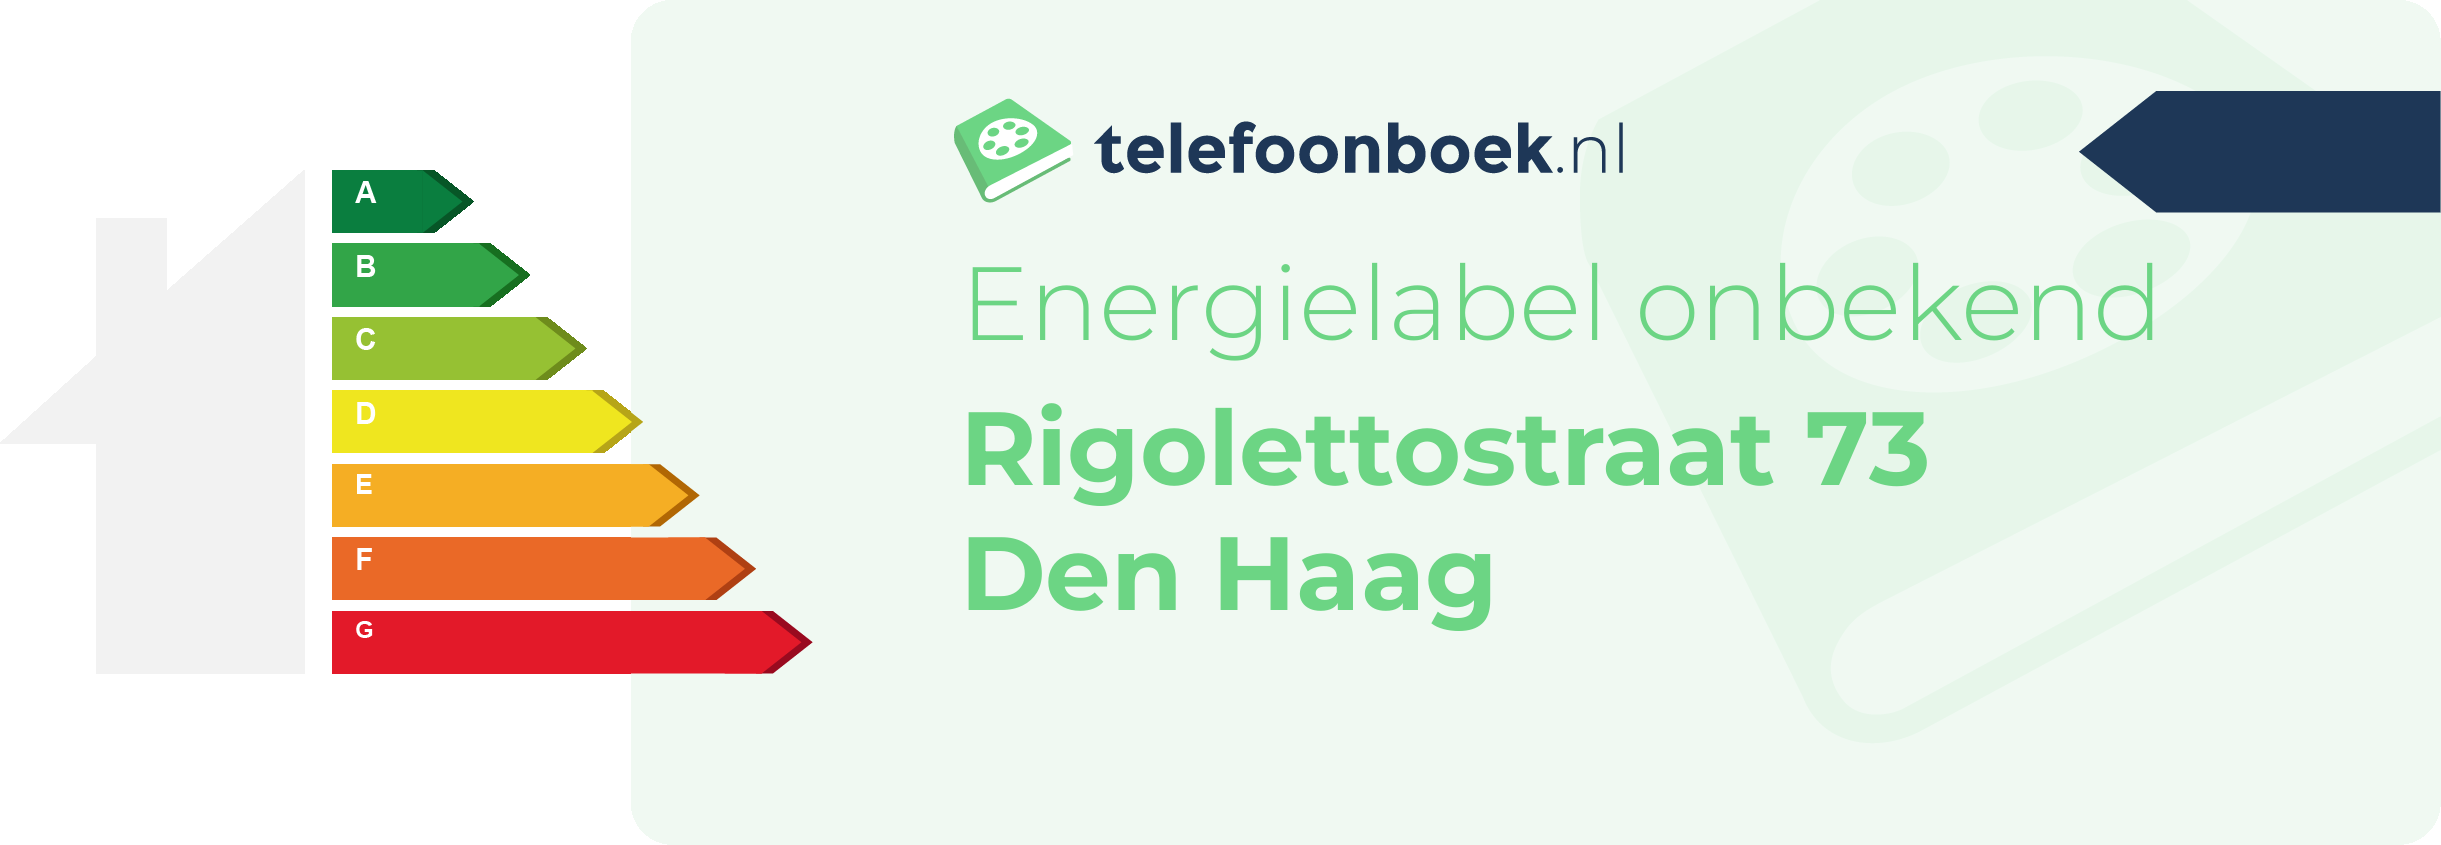 Energielabel Rigolettostraat 73 Den Haag